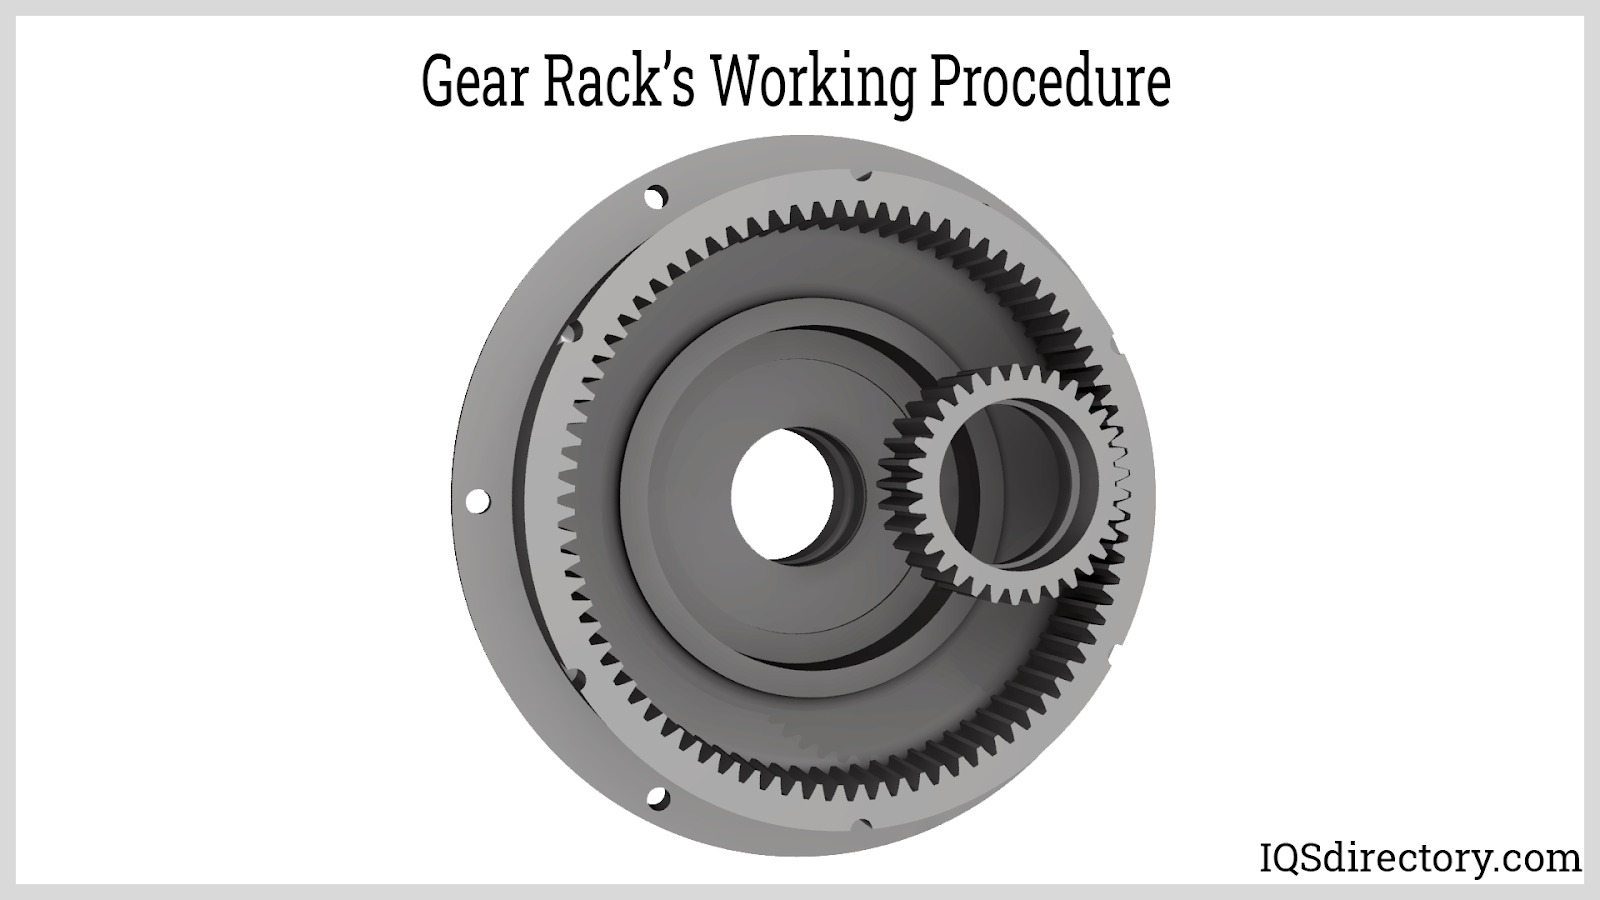 Gear Rack’s Working Procedure